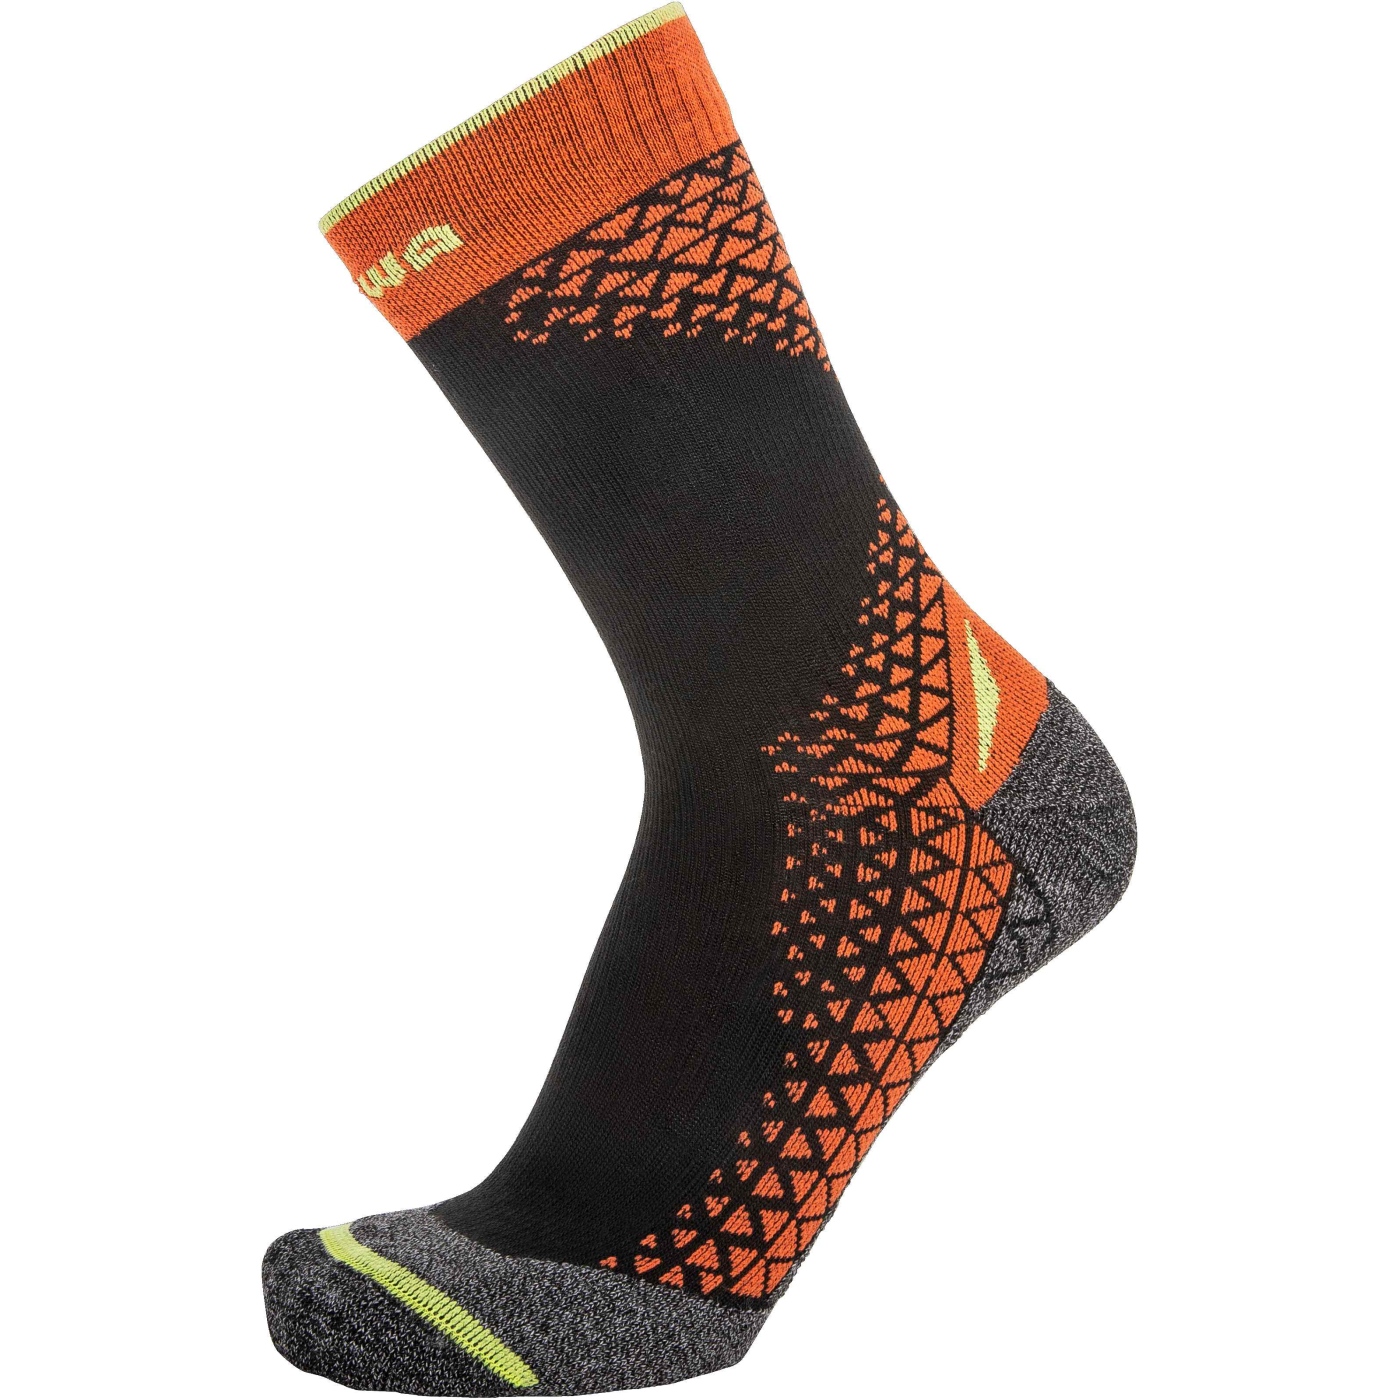 Produktbild von LOWA Performance Mid Outdoor-Socken - schwarz/orange